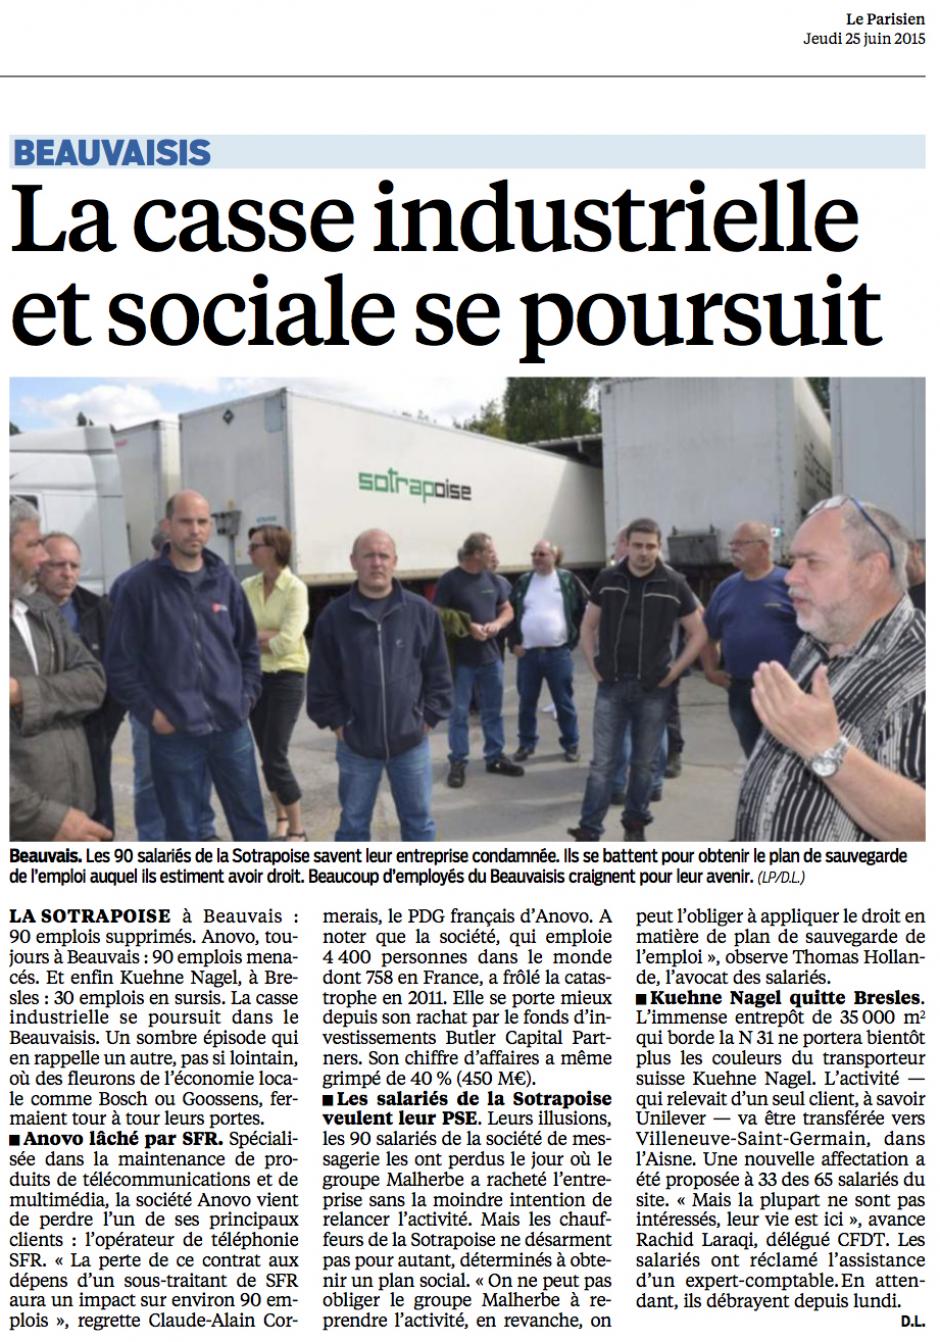 20150625-LeP-Beauvaisis-La casse industrielle et sociale se poursuit